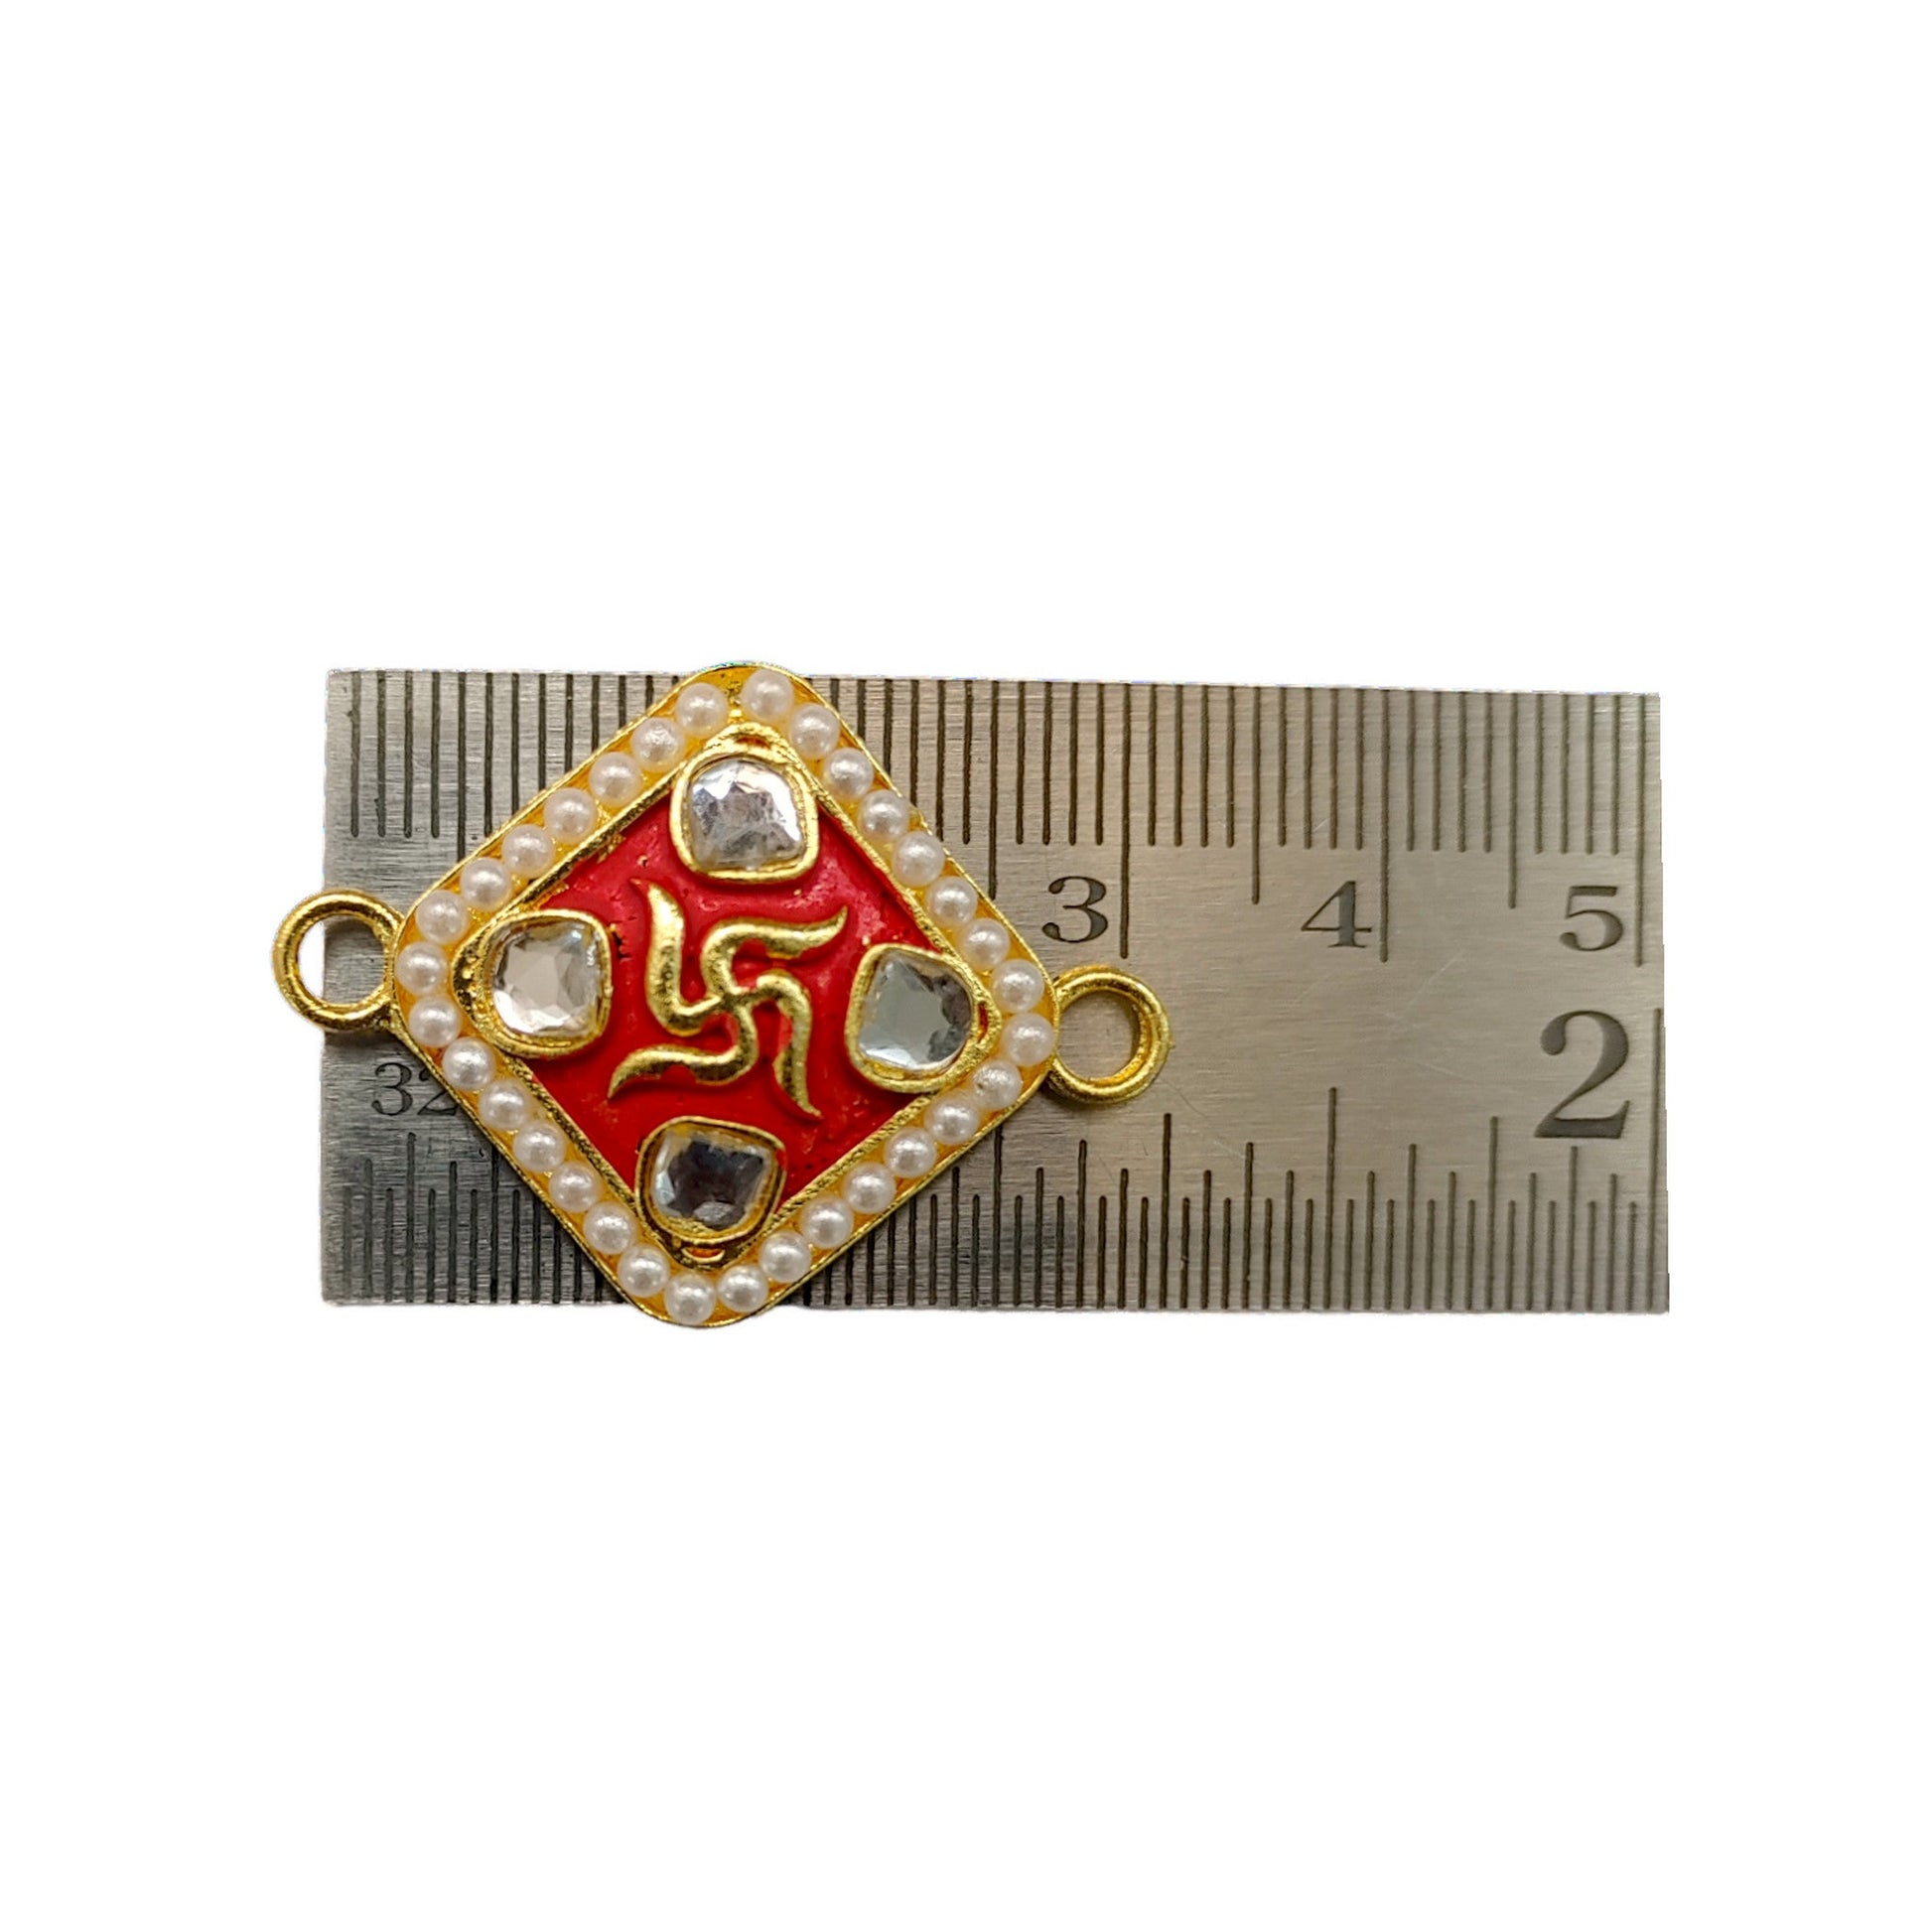 Indain Petals Swastik Style Metal Mazak Motif for Rakhi, Jewelry designing and Craft Making or Decor